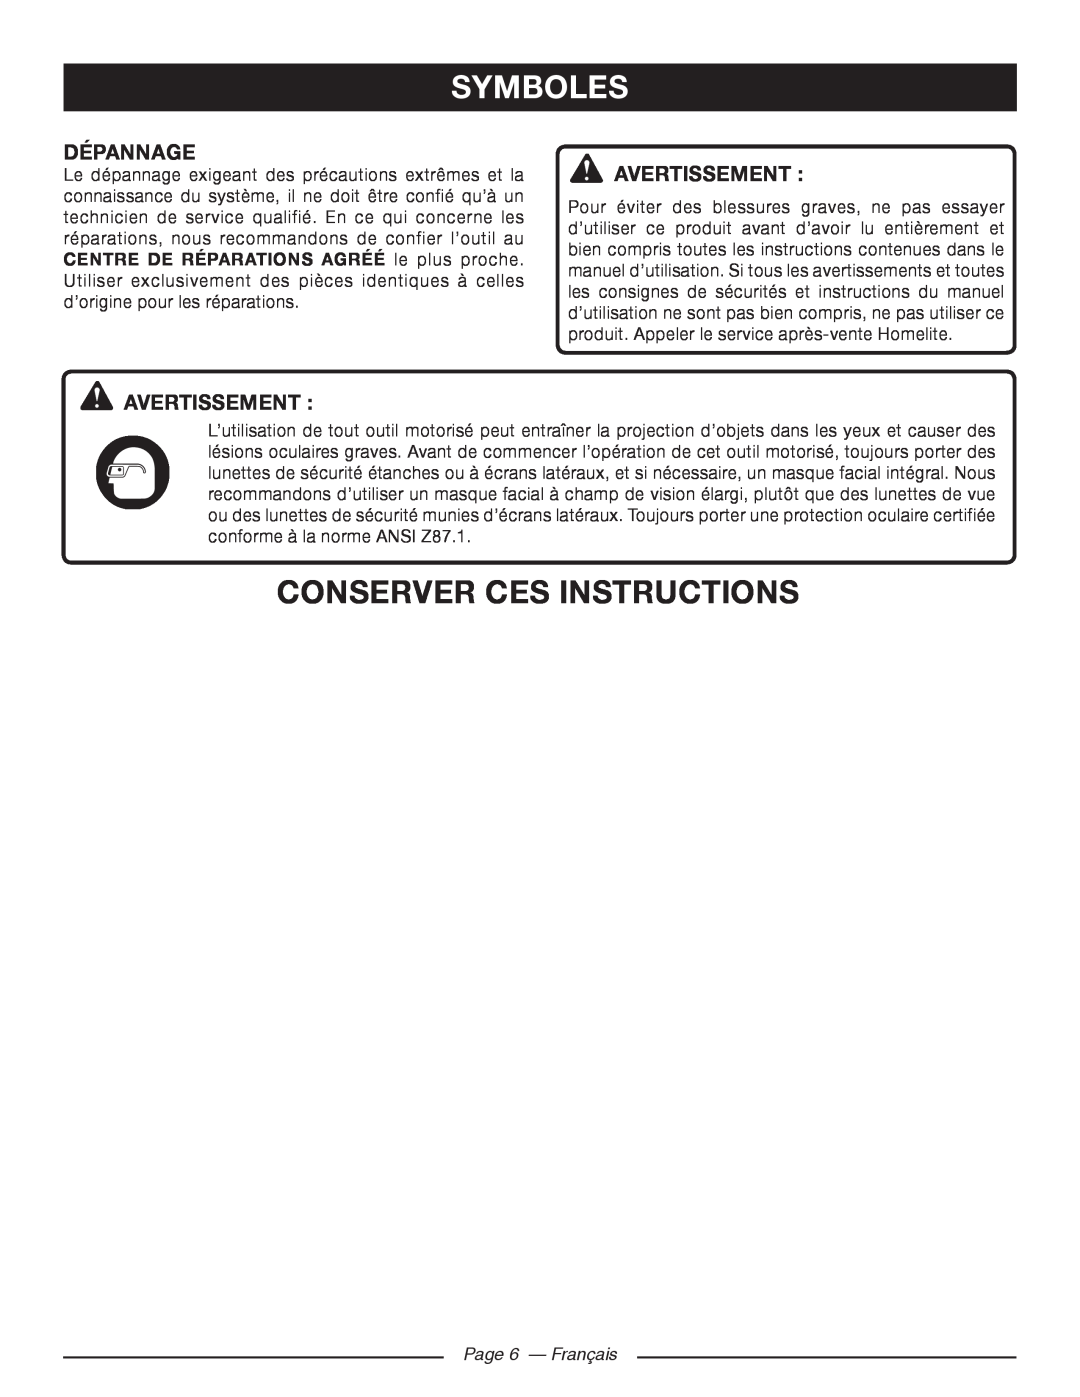 Homelite UT46510 manuel dutilisation Symboles, conserver ces instructions, Dépannage, Avertissement , Page 6 - Français 